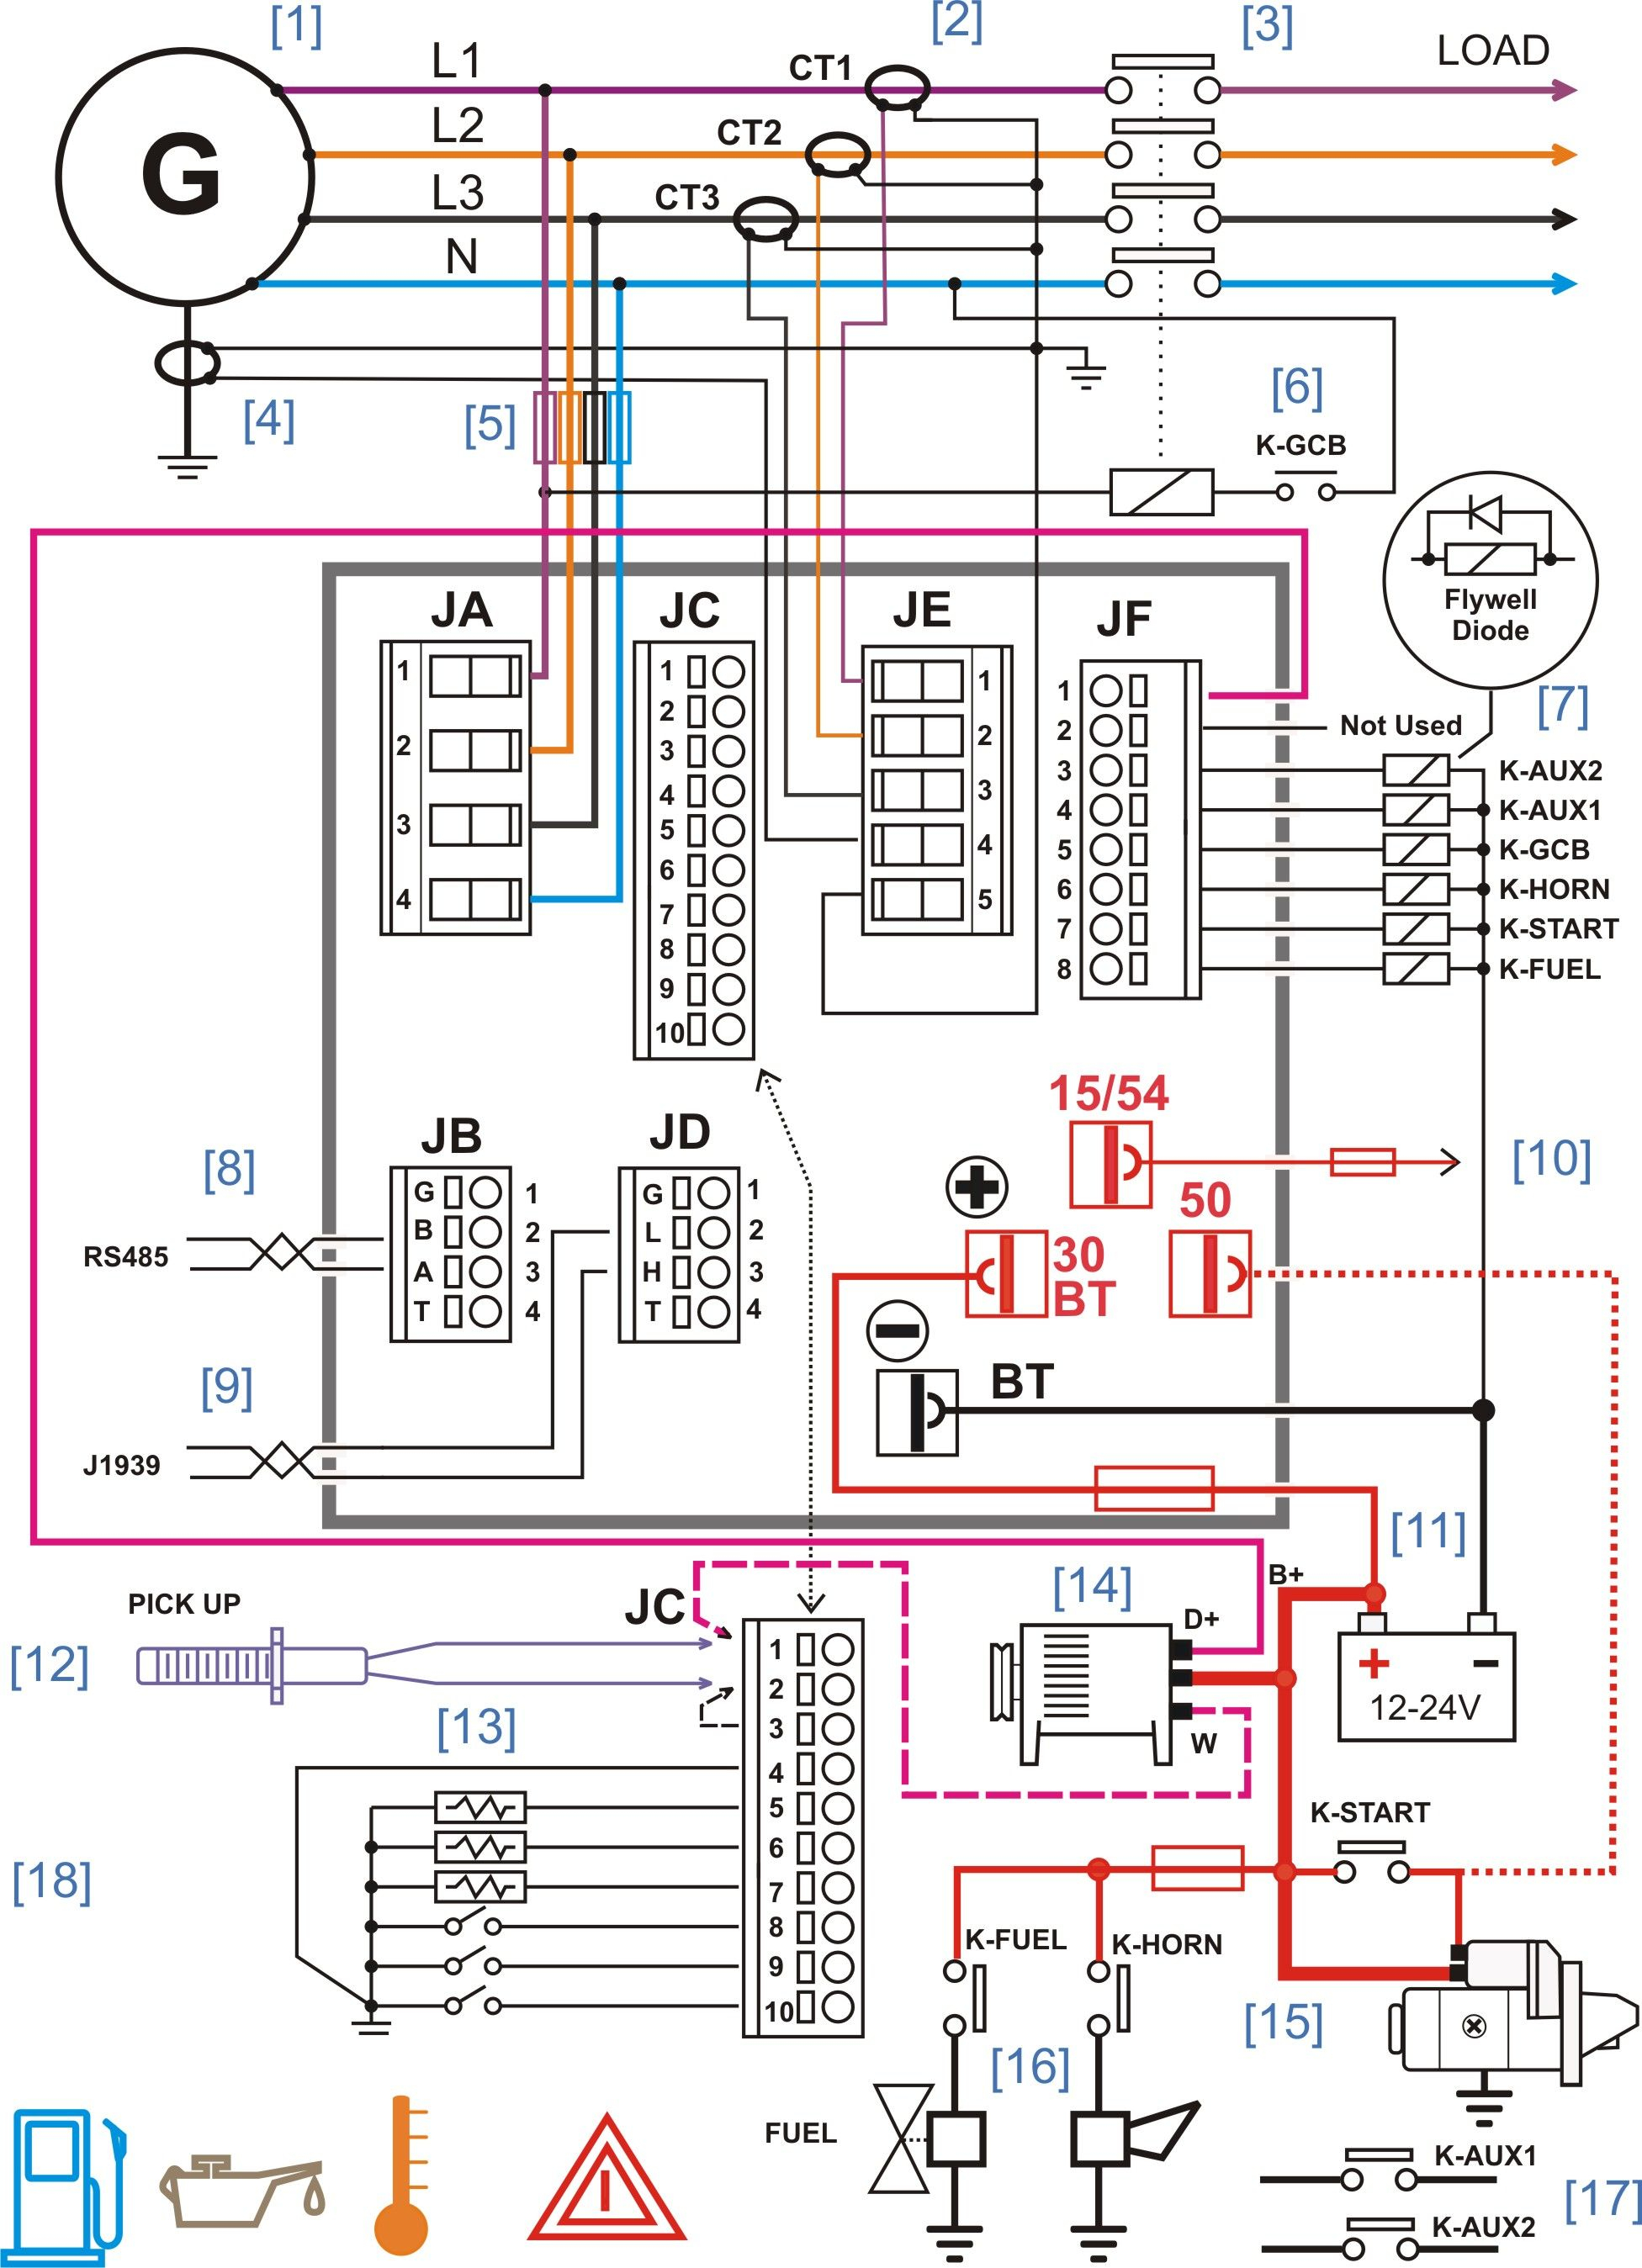 Wiring Diagram Panel Listrik 3 Phase - Wiring Diagram